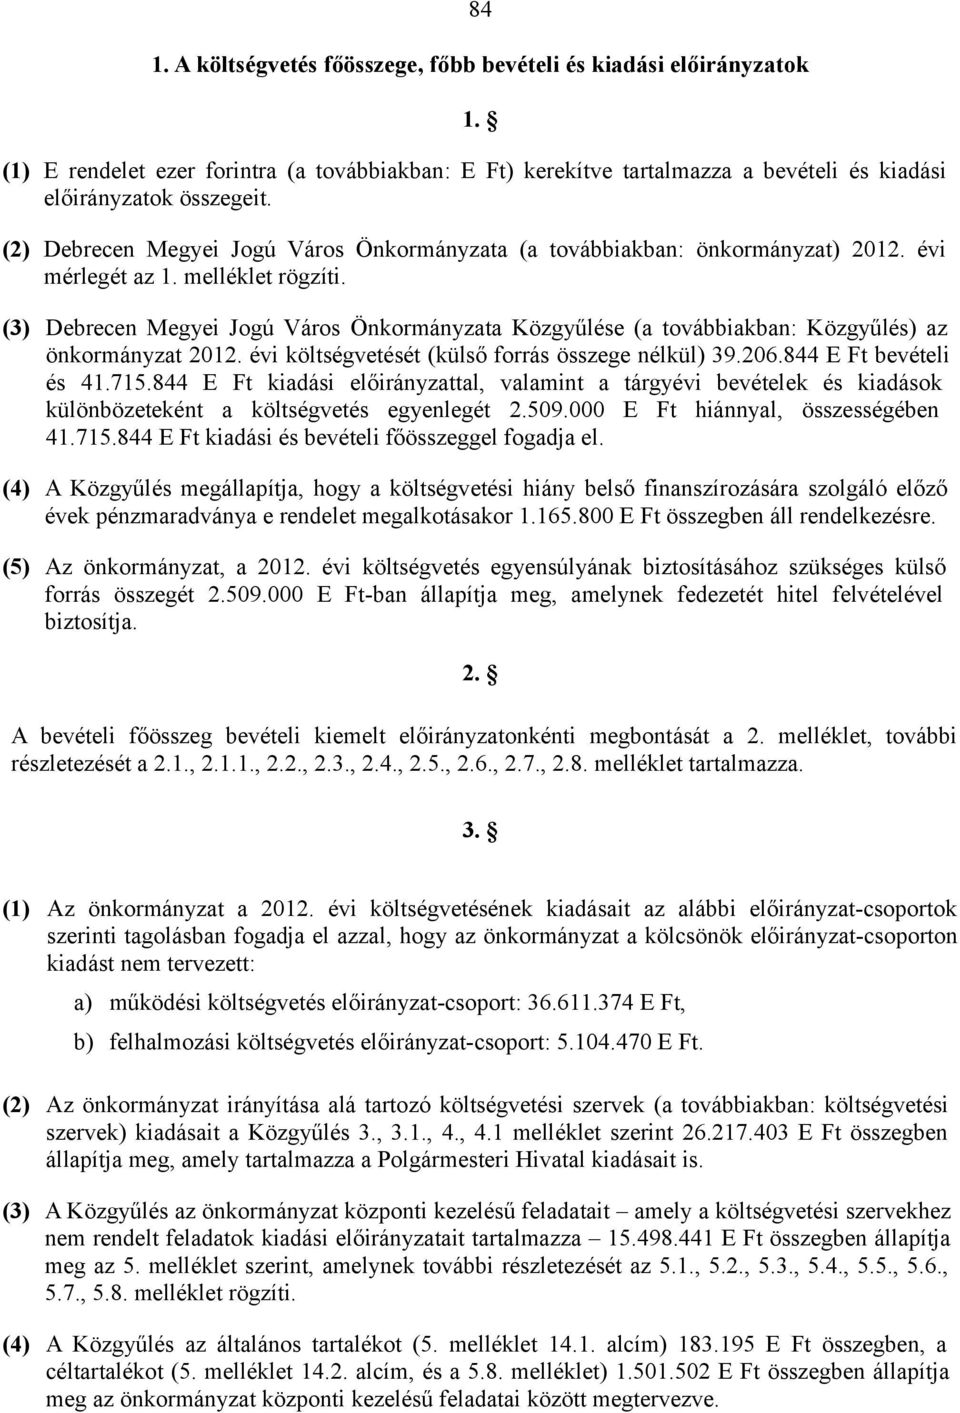 (3) Debrecen Megyei Jogú Város Önkormányzata Közgyűlése (a továbbiakban: Közgyűlés) az önkormányzat 2012. évi költségvetését (külső forrás összege nélkül) 39.206.844 E Ft bevételi és 41.715.